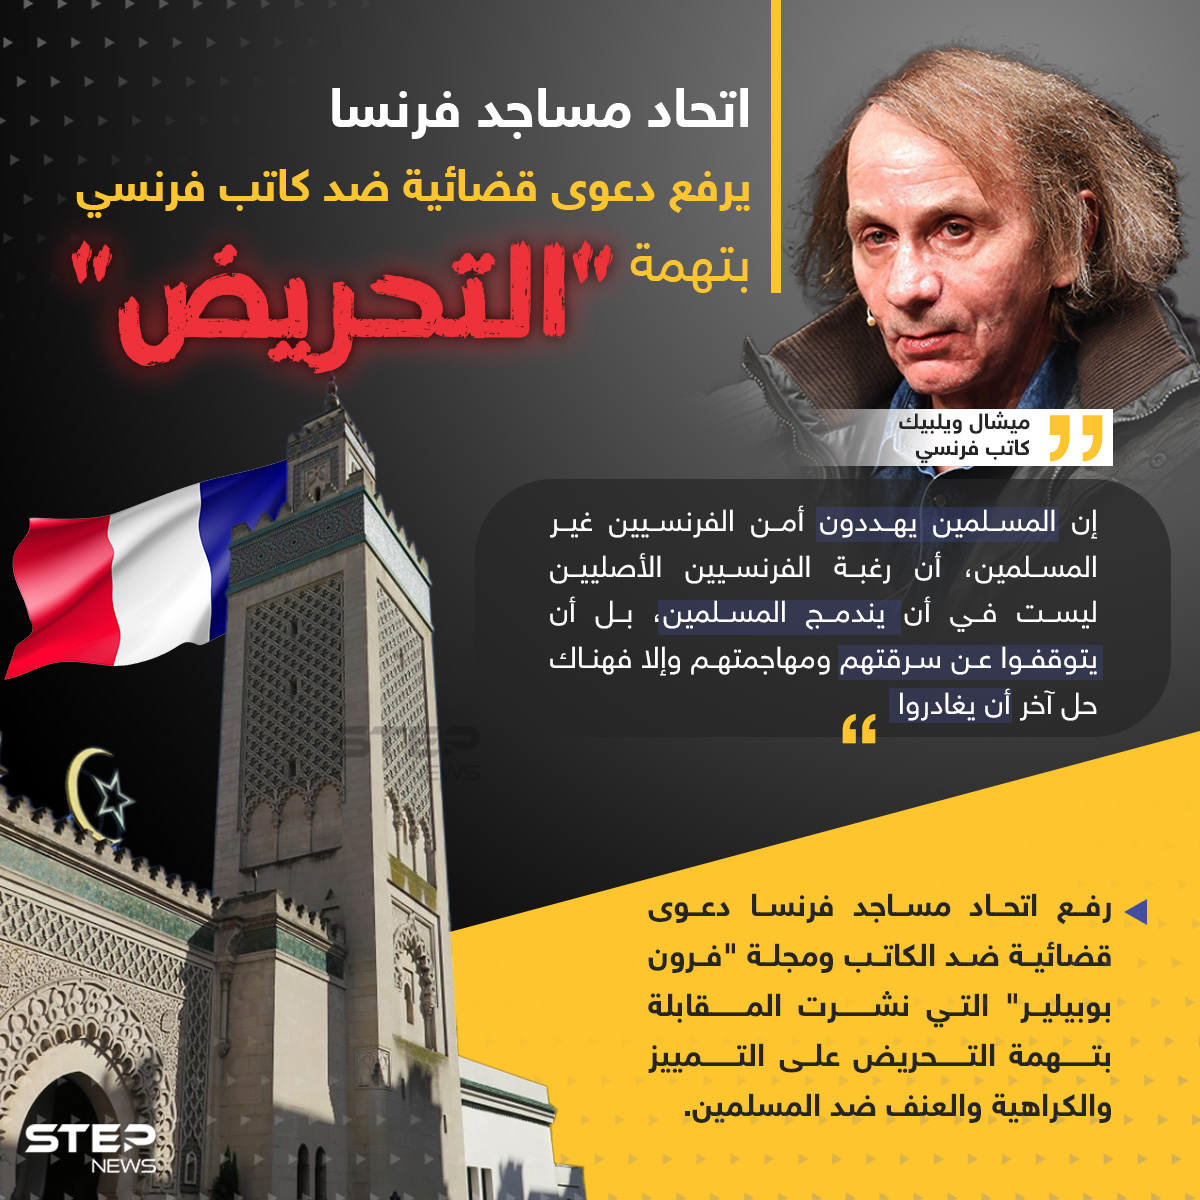 اتحاد مساجد فرنسا يرفع دعوى قضائية ضد كاتب فرنسي بتهمة "التحريض" ضد المسلمين